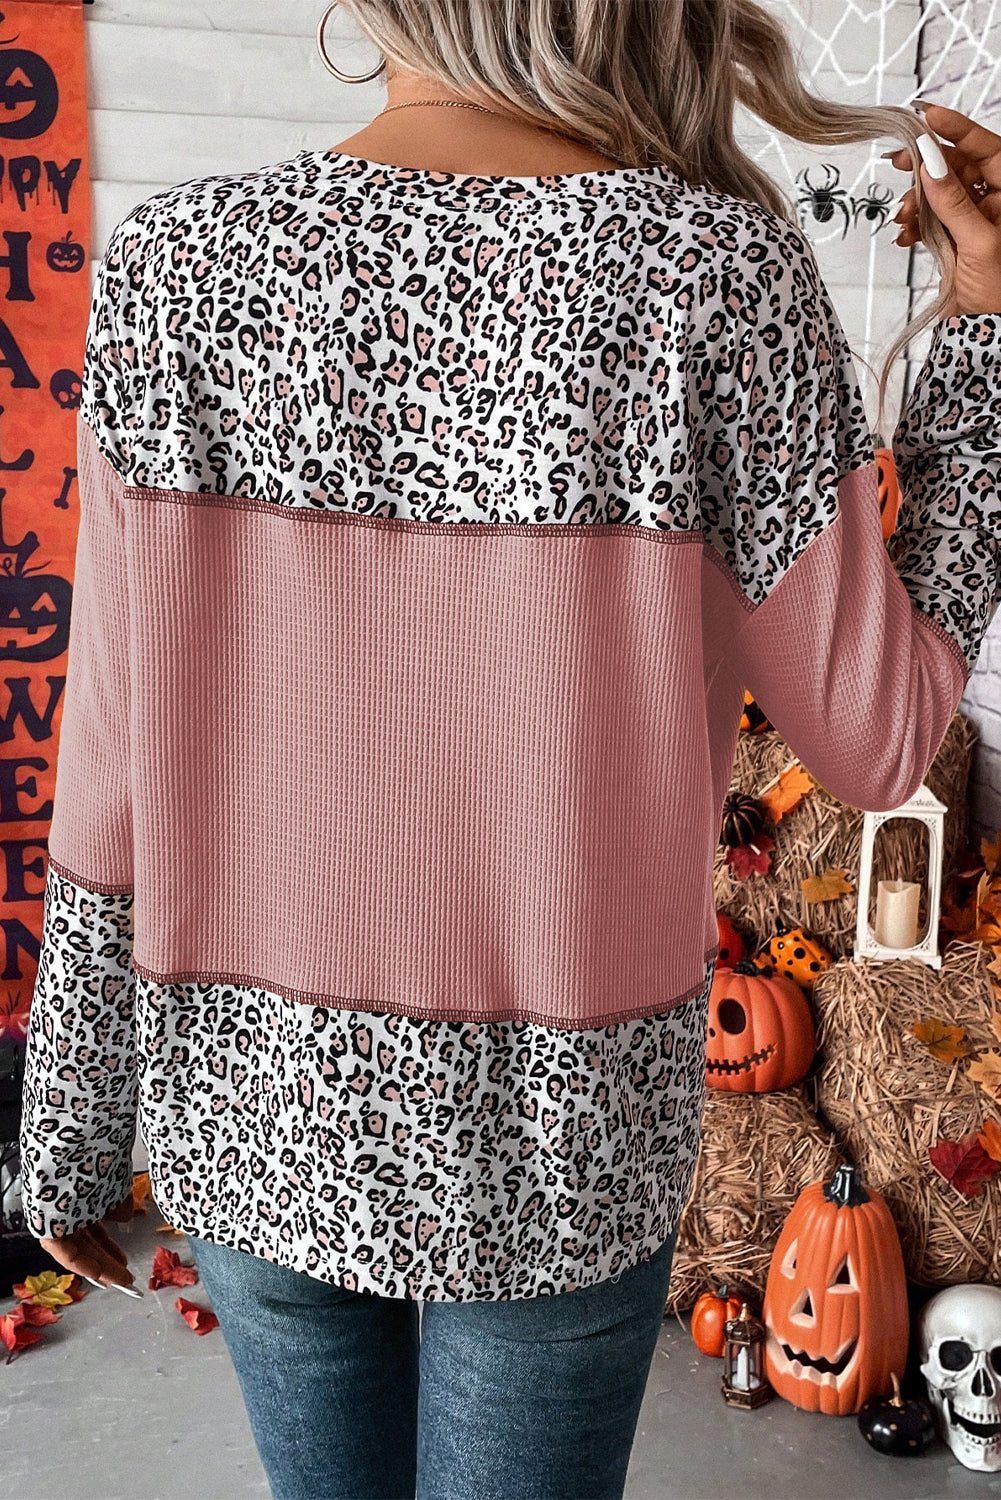 Svijetlo ružičasta majica s motivom leoparda, pletena krpa